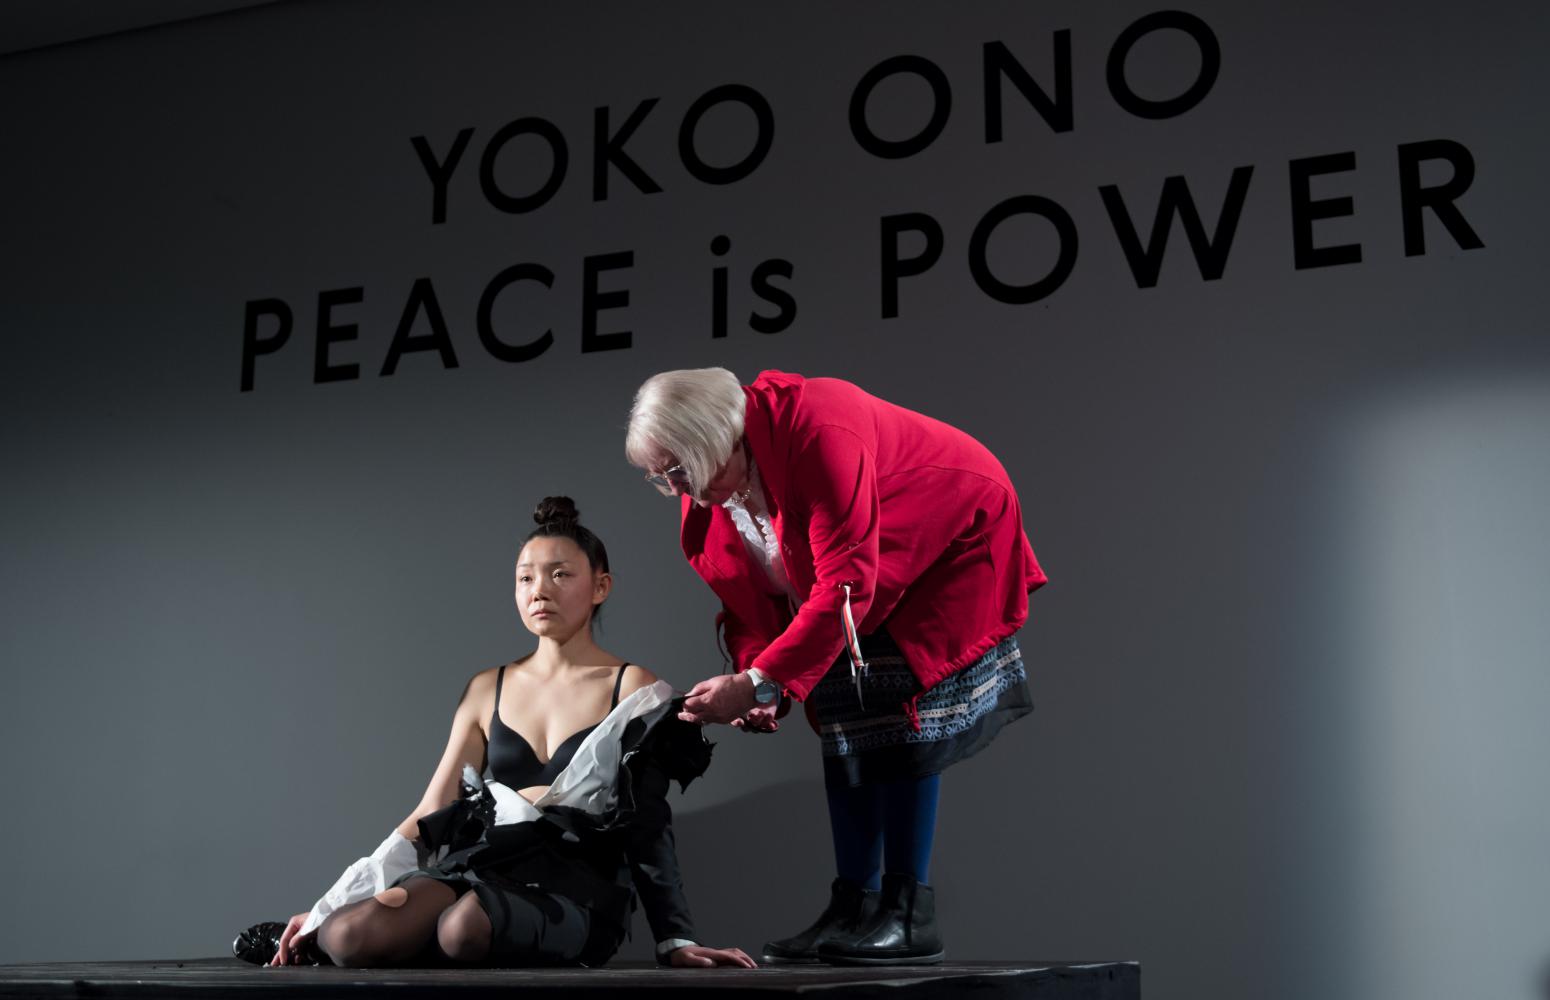  Ist sicher gut fürs Wohlbefinden: Eine Besucherin der Ausstellung "Yoko Ono - Peace is Power" im Museum der bildenden Künste in Leipzig schneidet am Gewand der Künstlerin Echo Morgan. Die Performance zeigt Yoko Onos "Cut Piece"